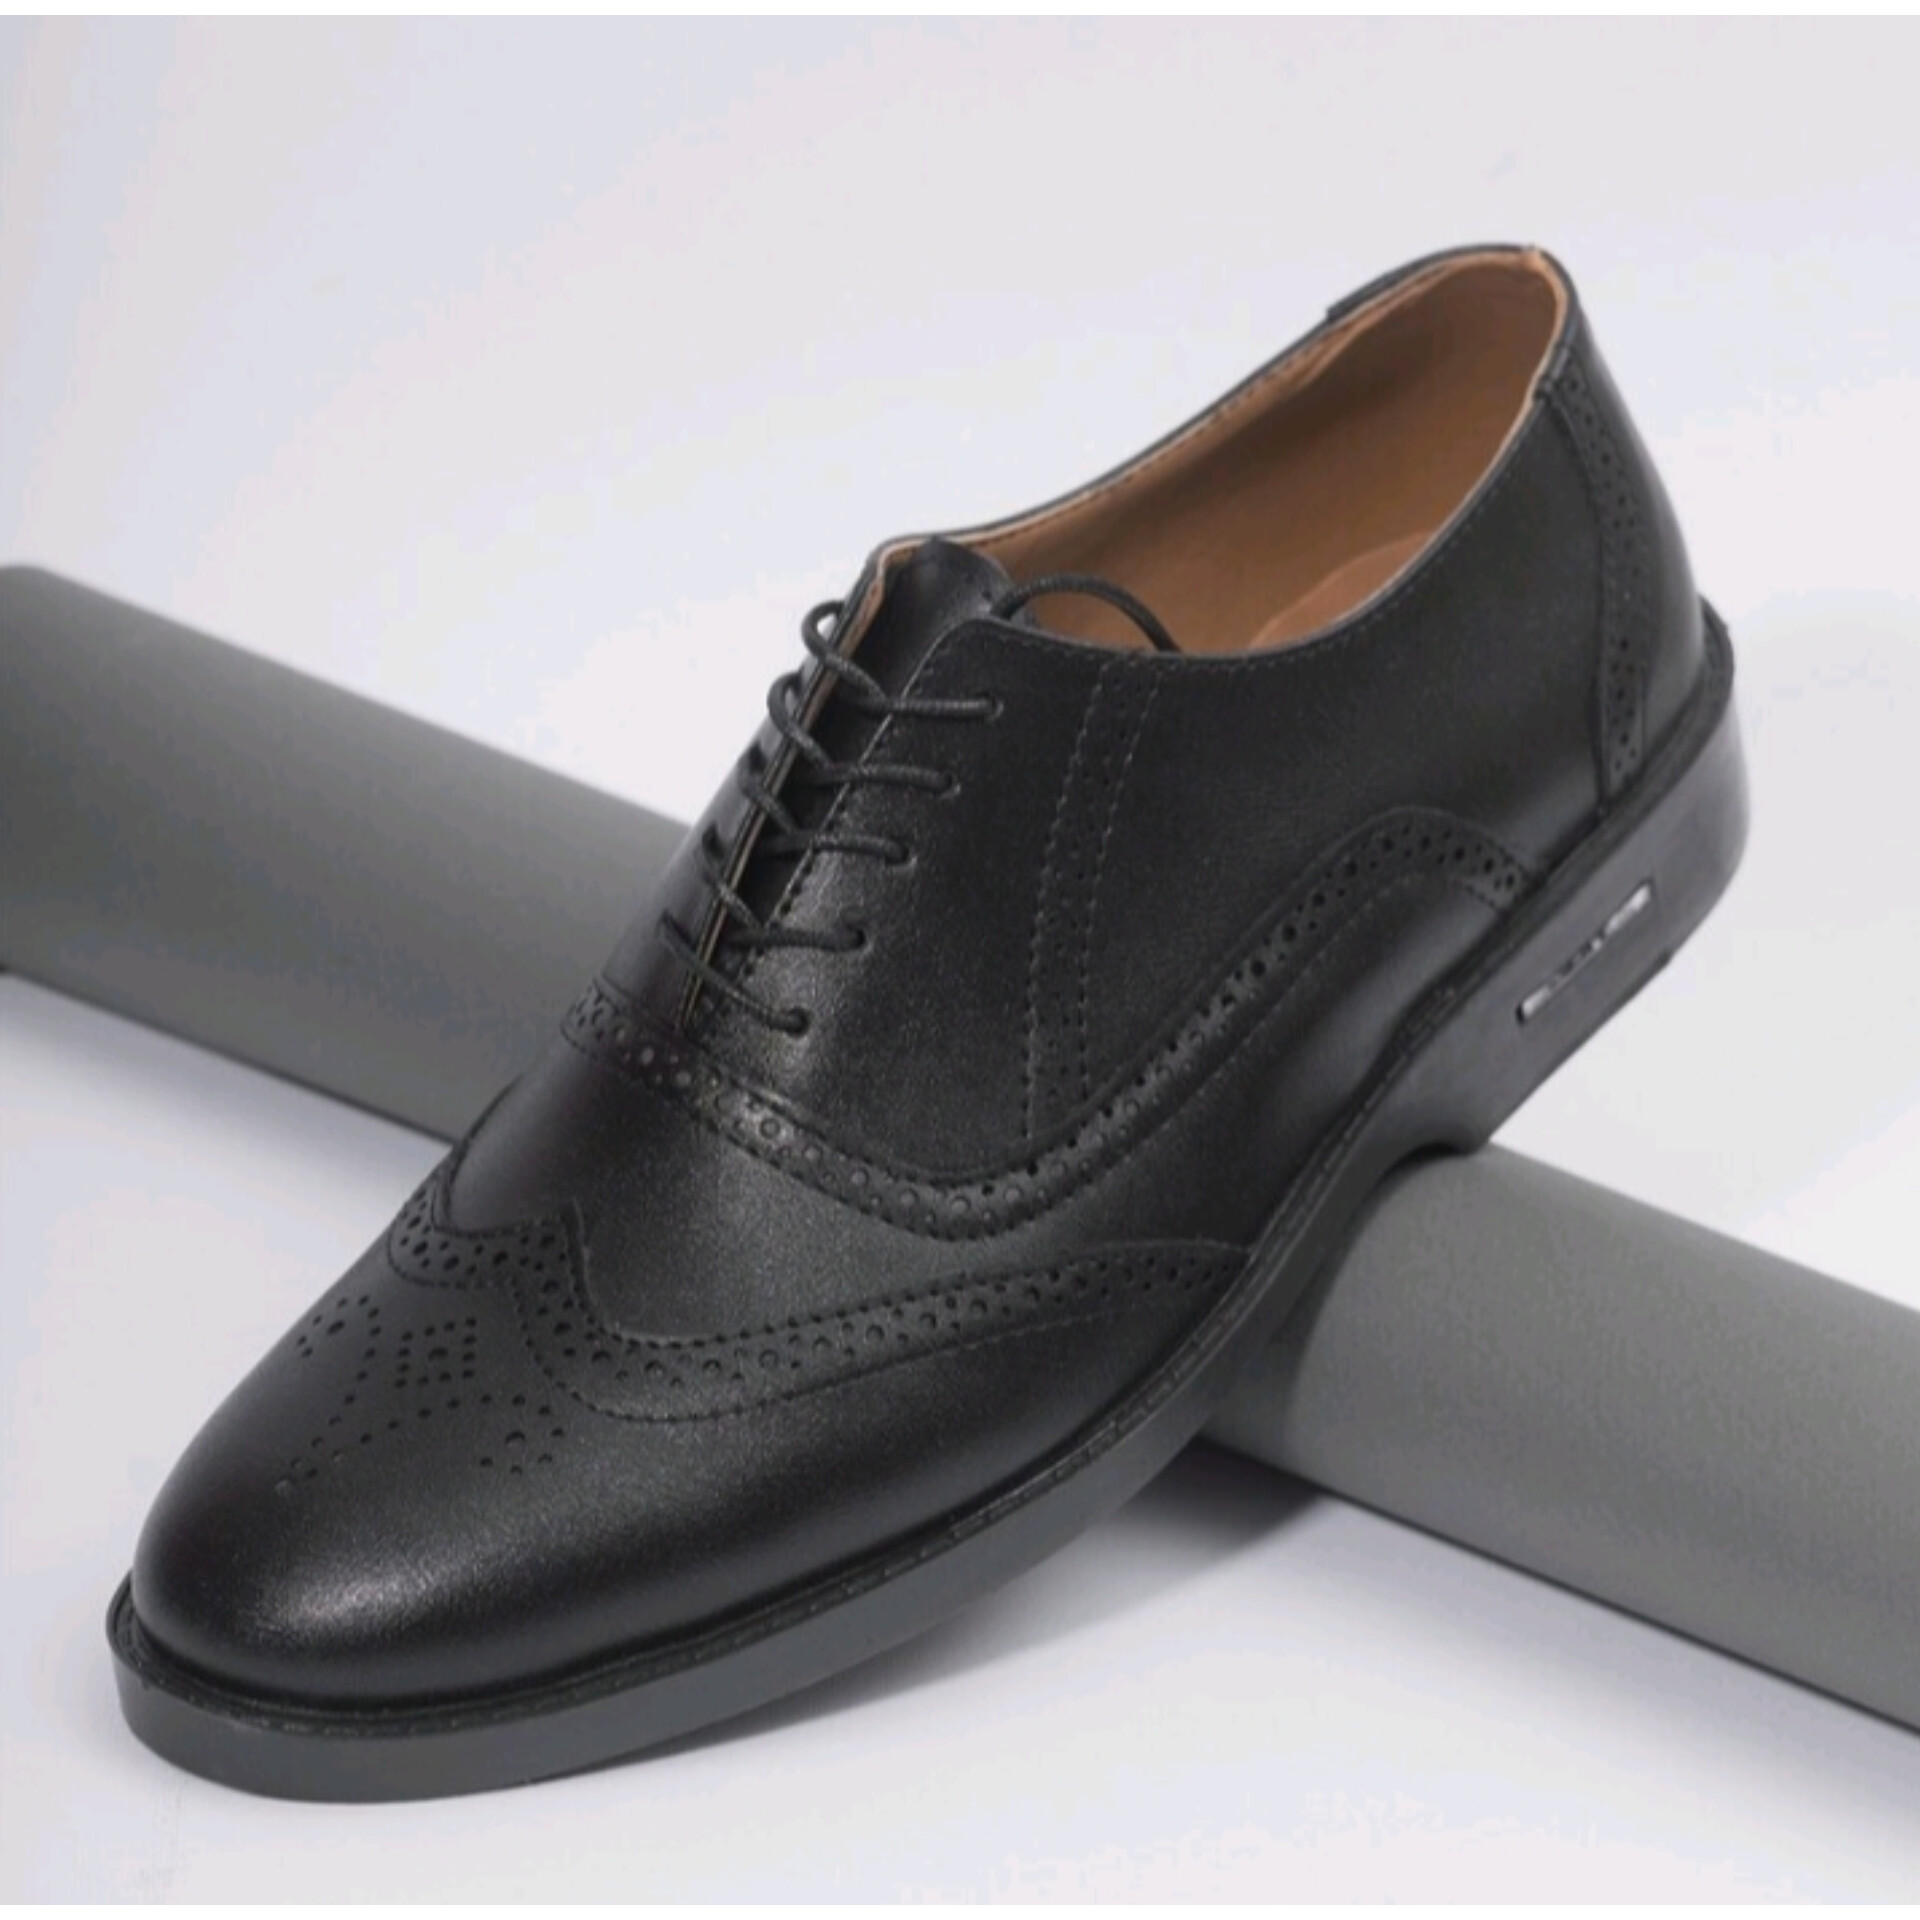 خرید کفش عمده اسپرت ومجلسی رسمی مردانه رویه چرم خارجی